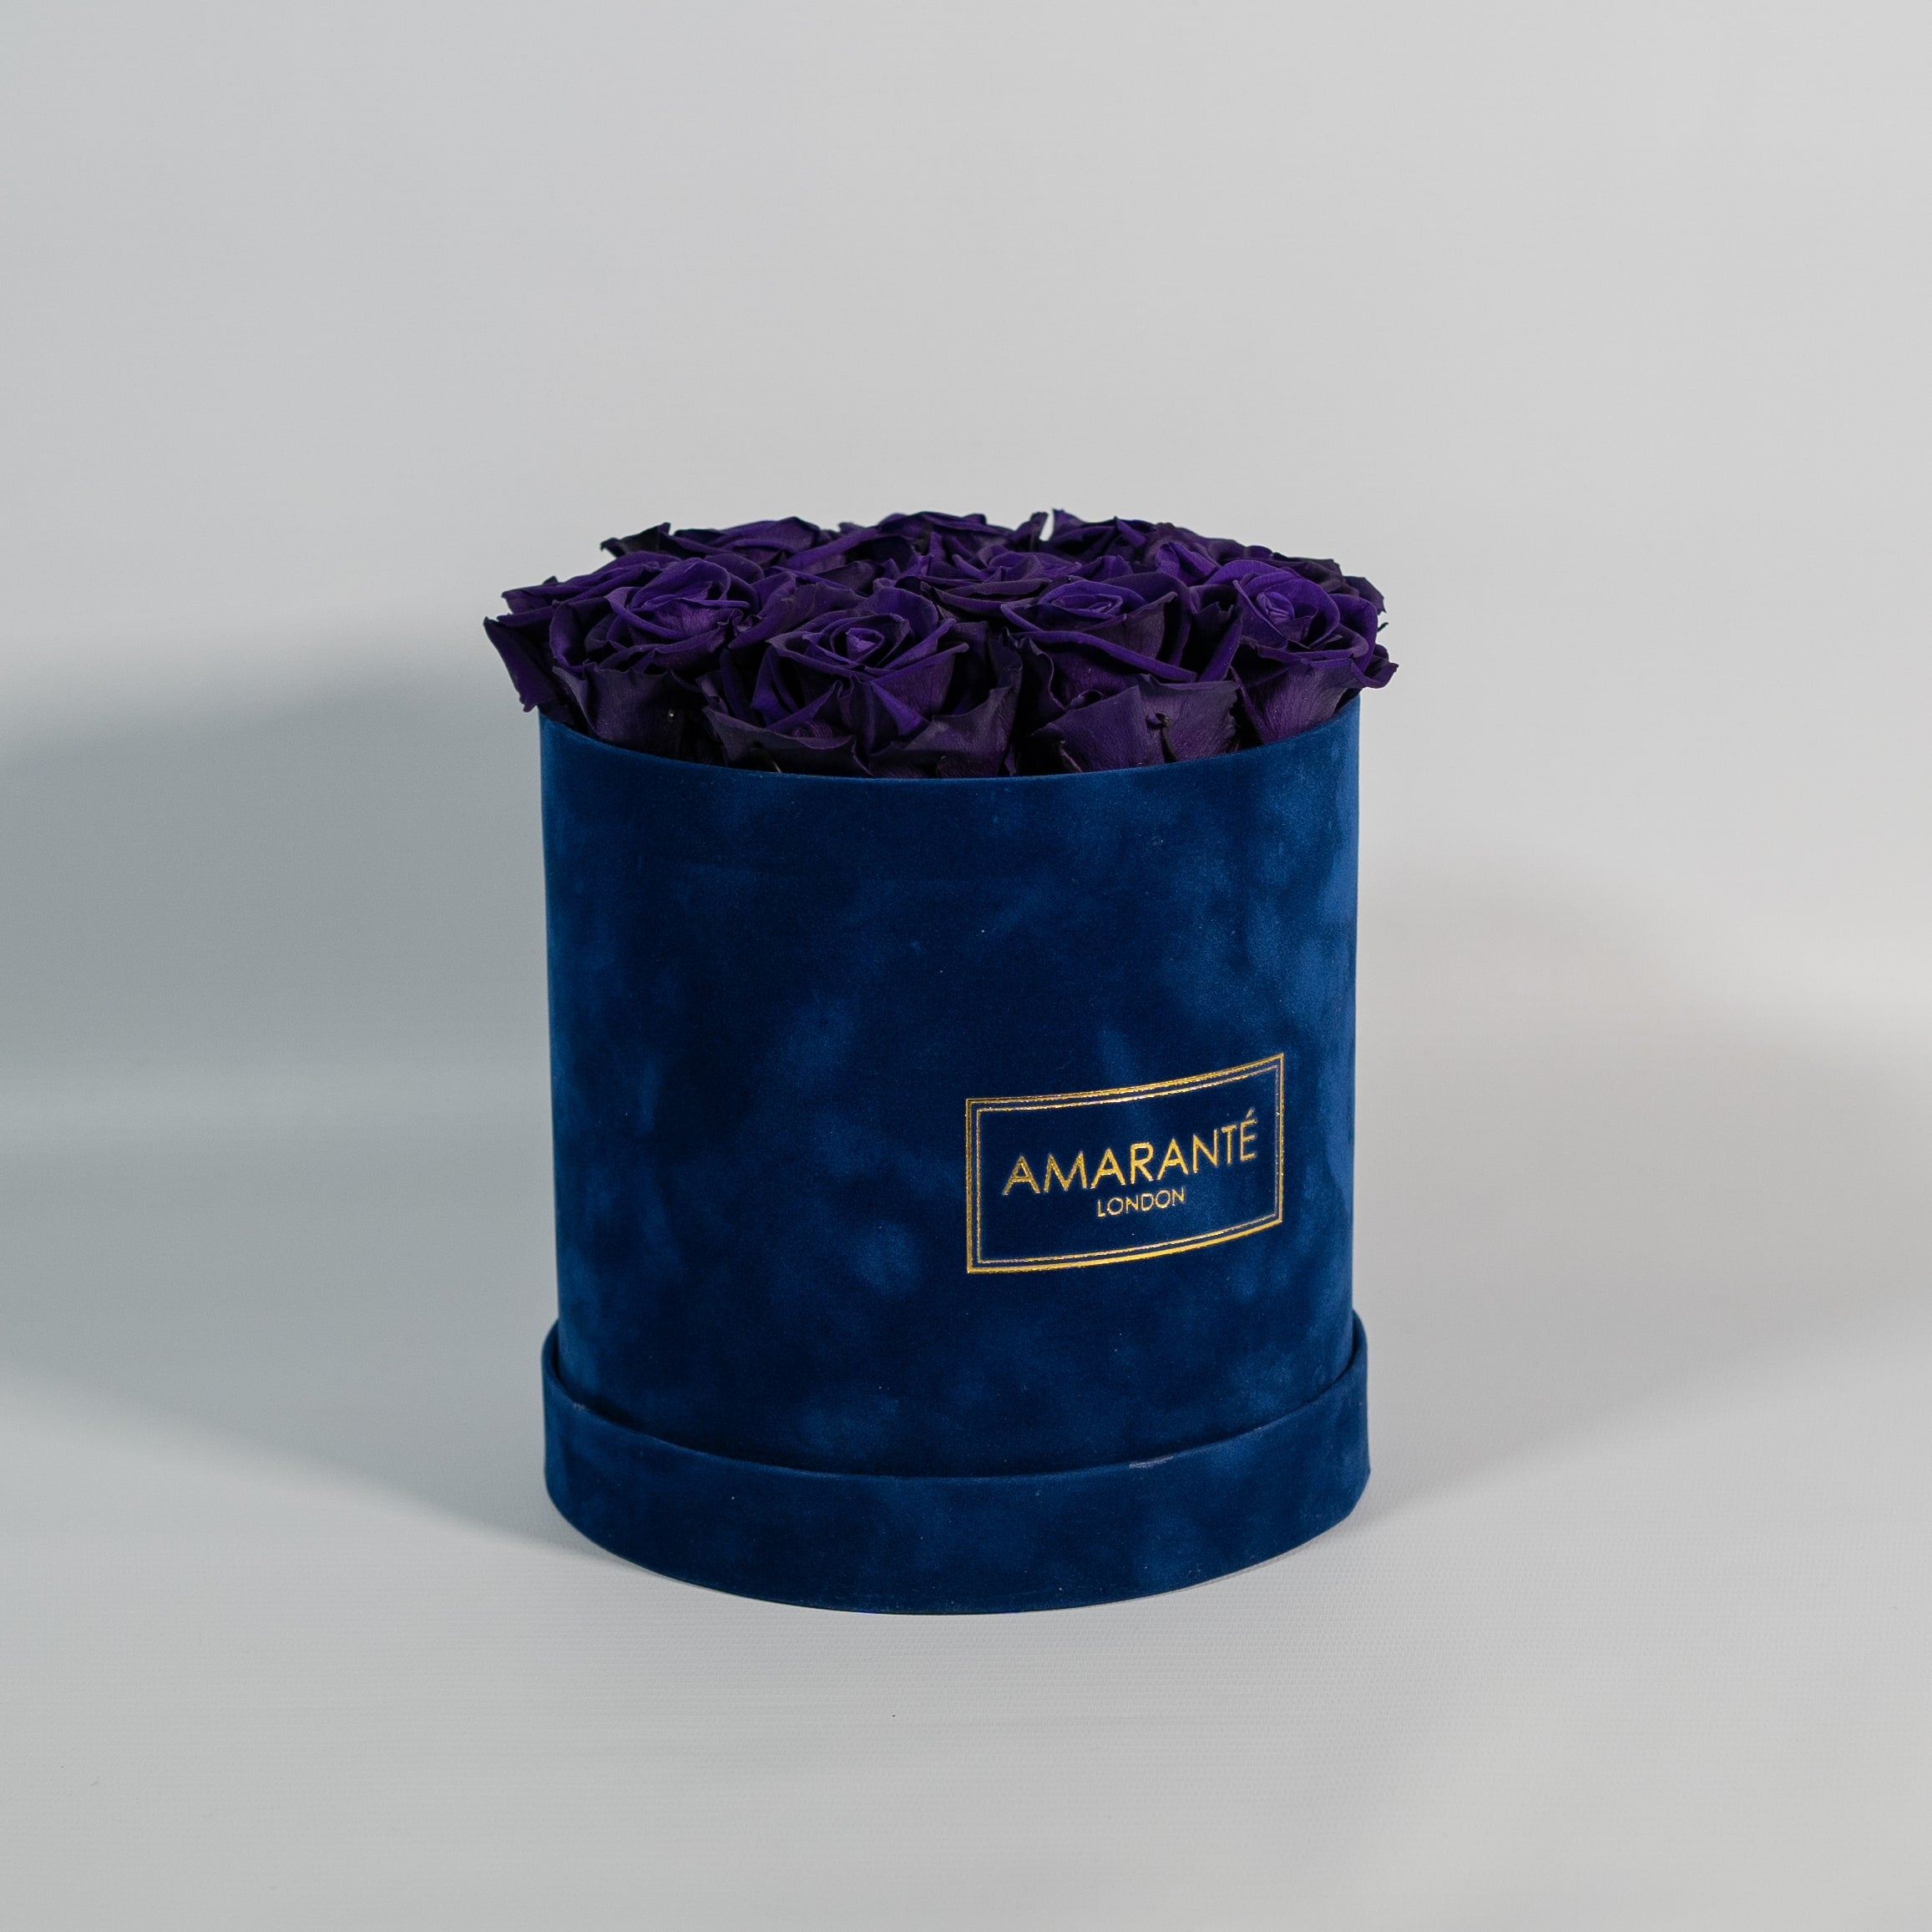 Luxurious dark purple Roses showcased in a dapper blue box 